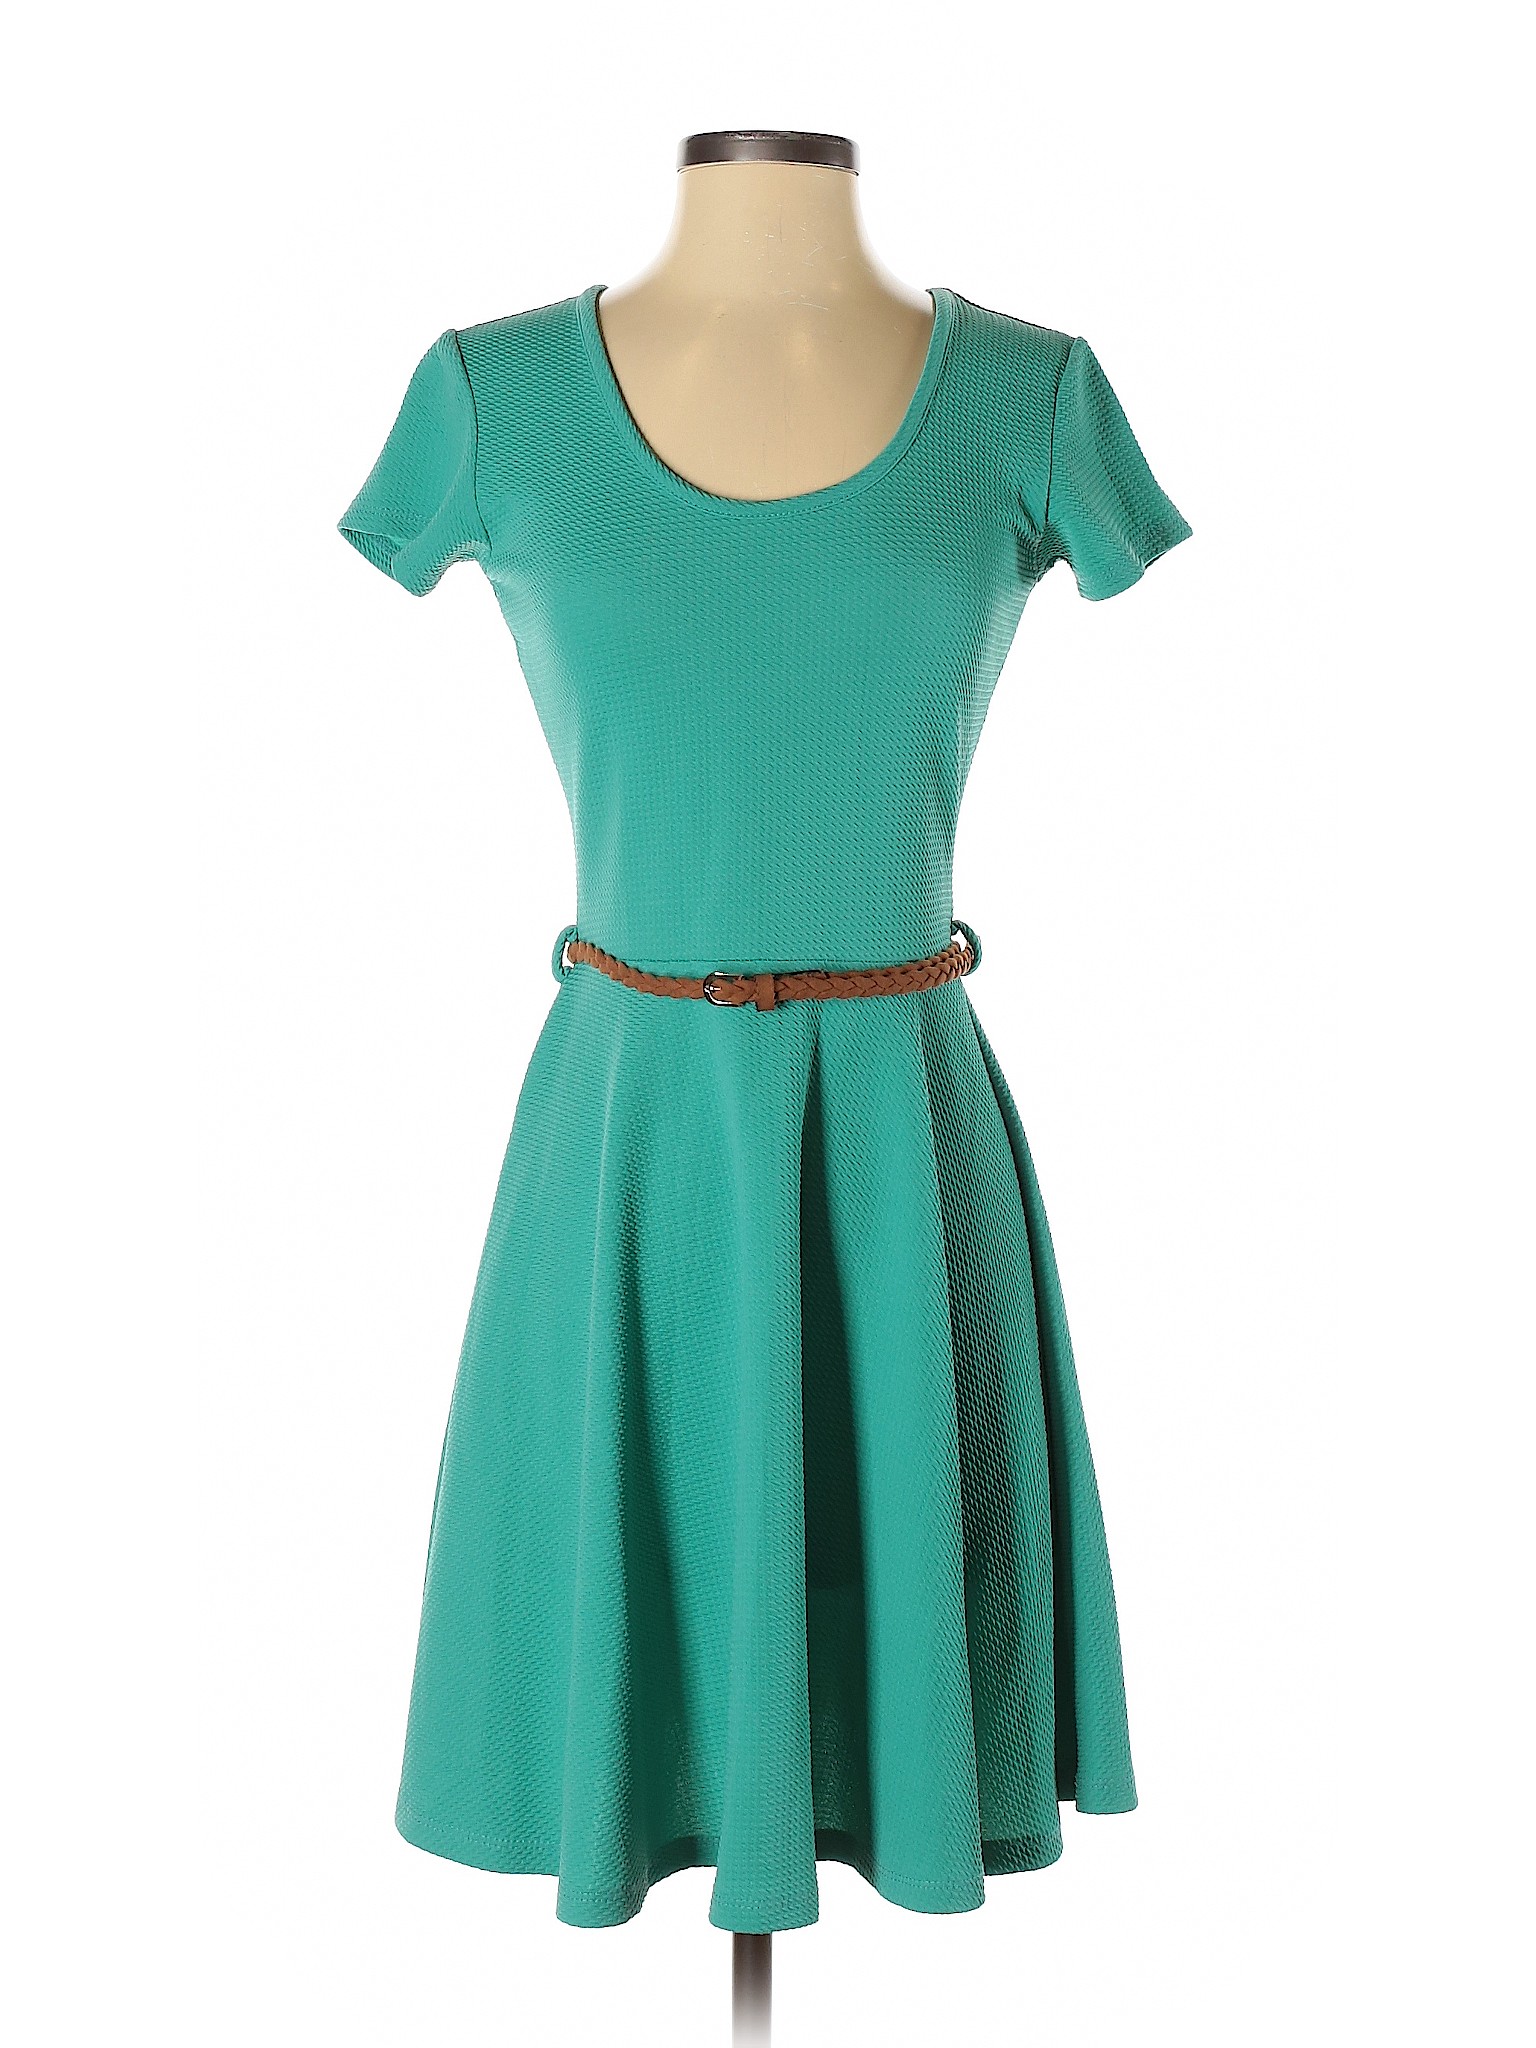 Rue21 Women Green Casual Dress S | eBay